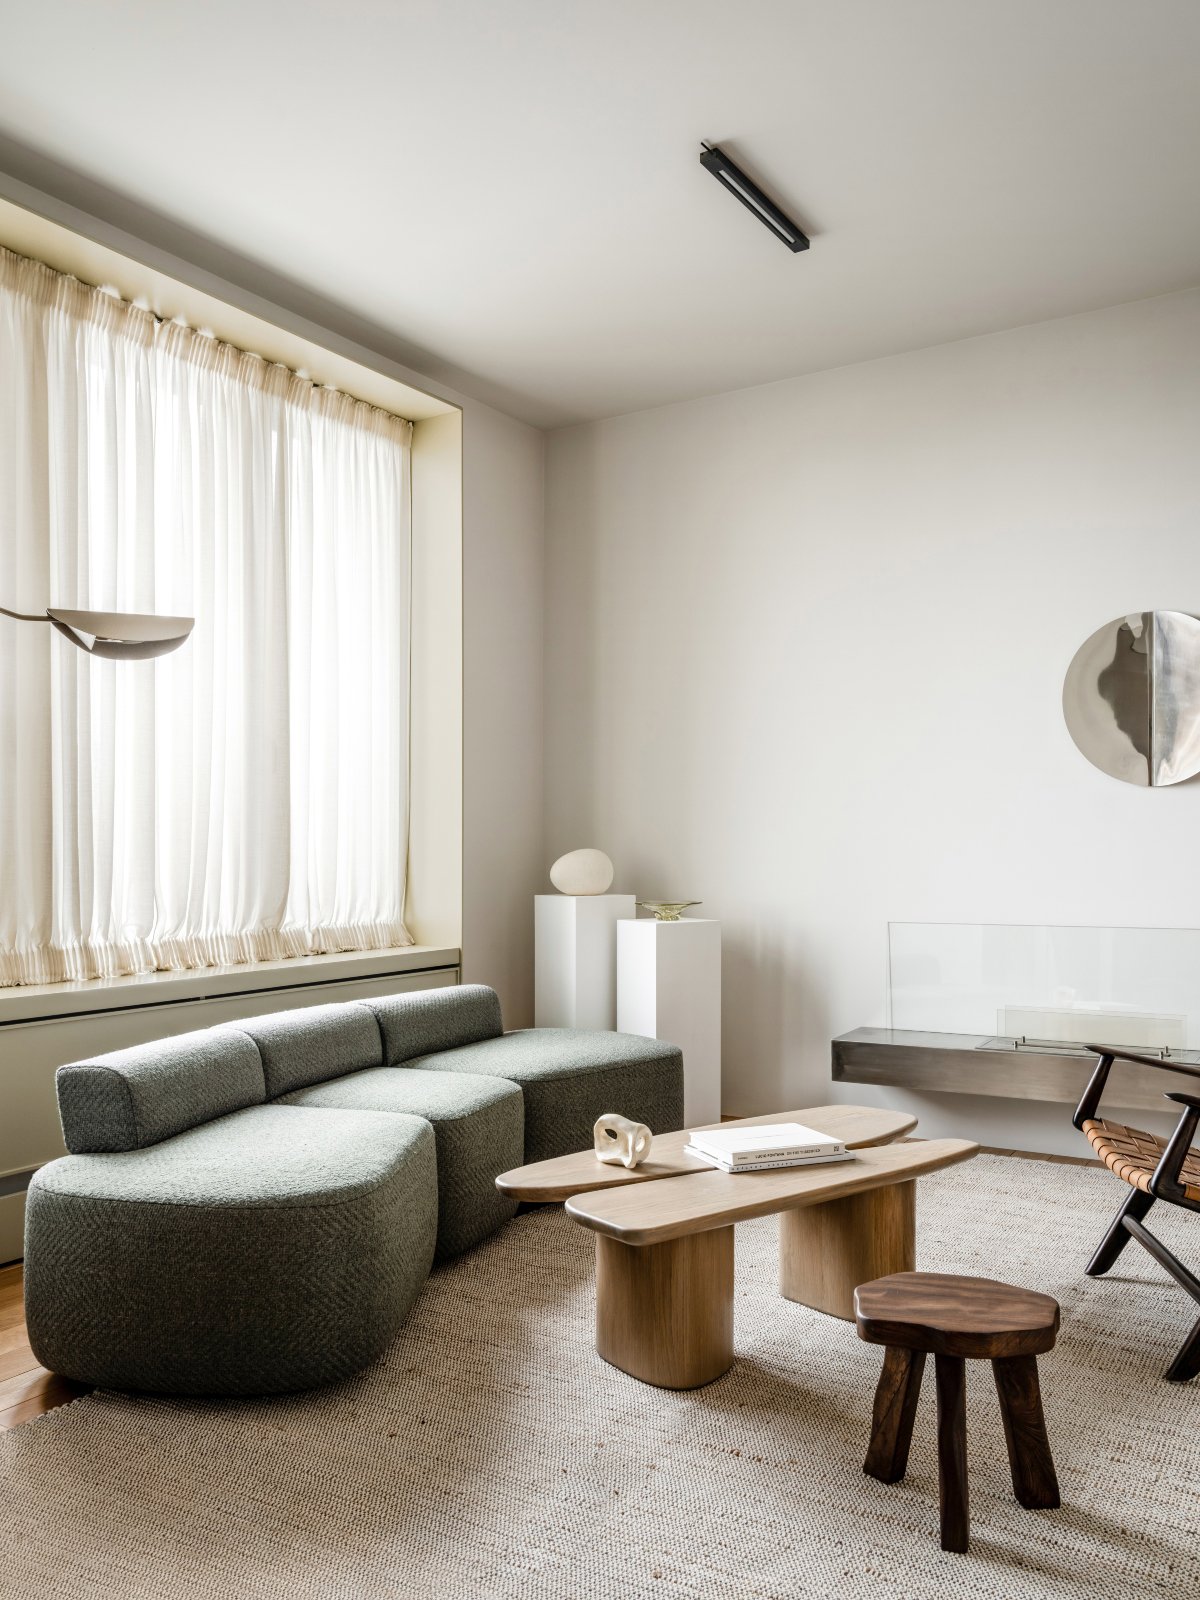 Salón minimalista con escasos elementos decorativos